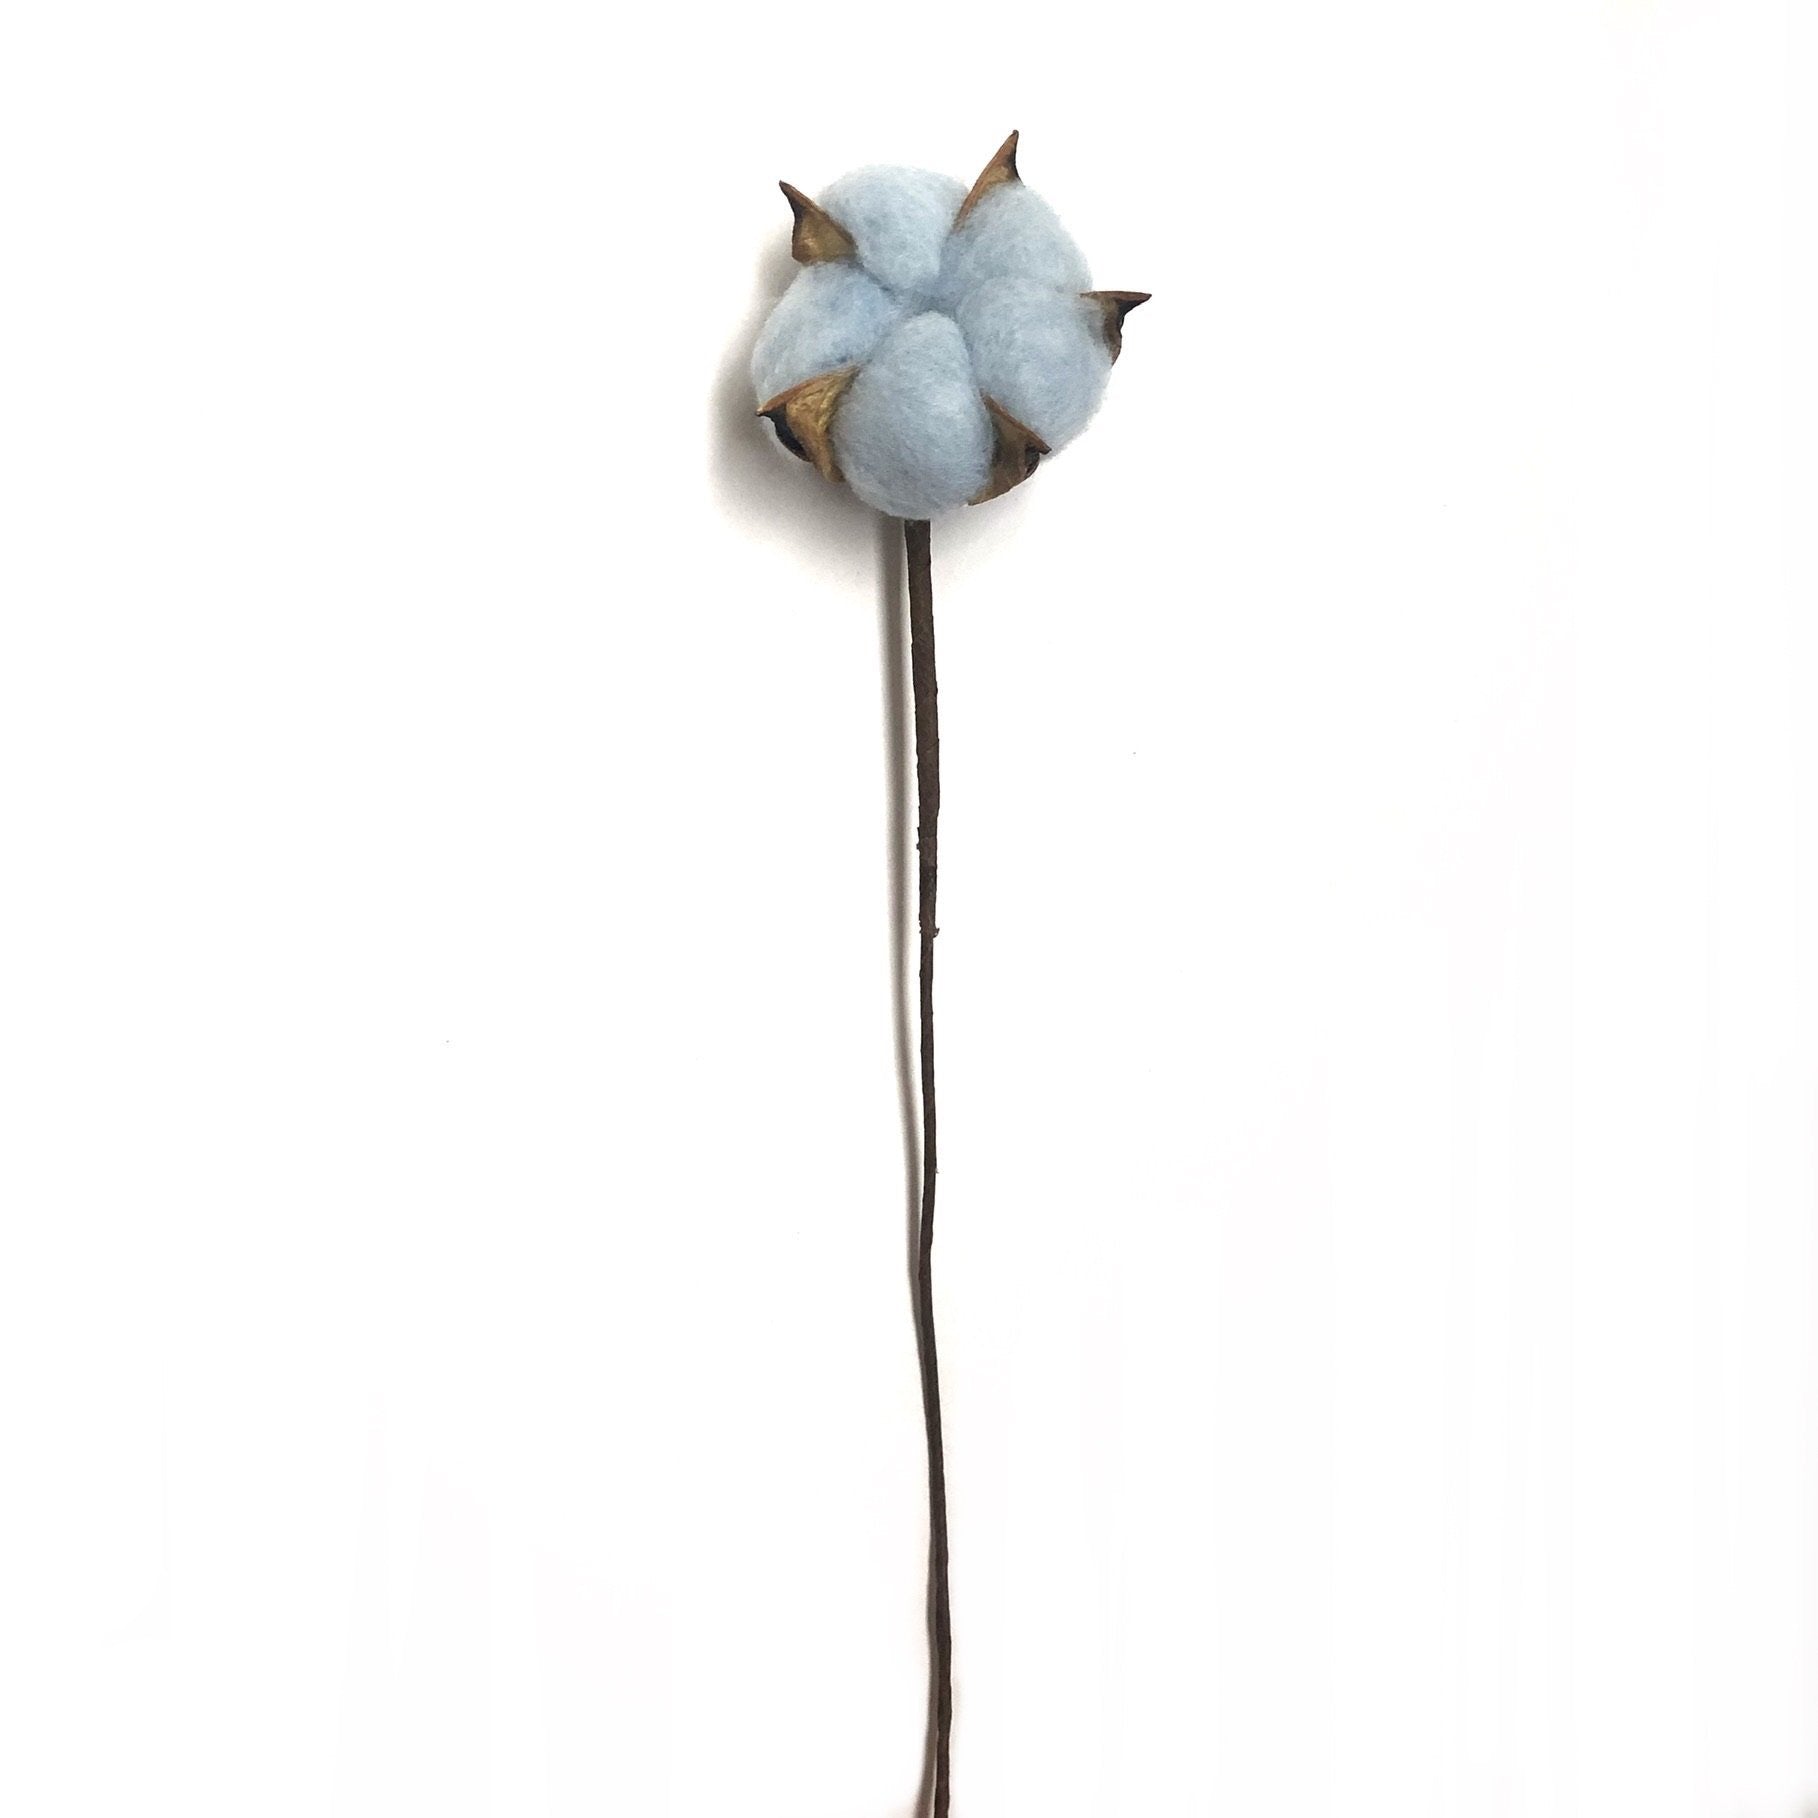 Artificial Natural Dried Cotton Flower Stem - Blue 60cm Long